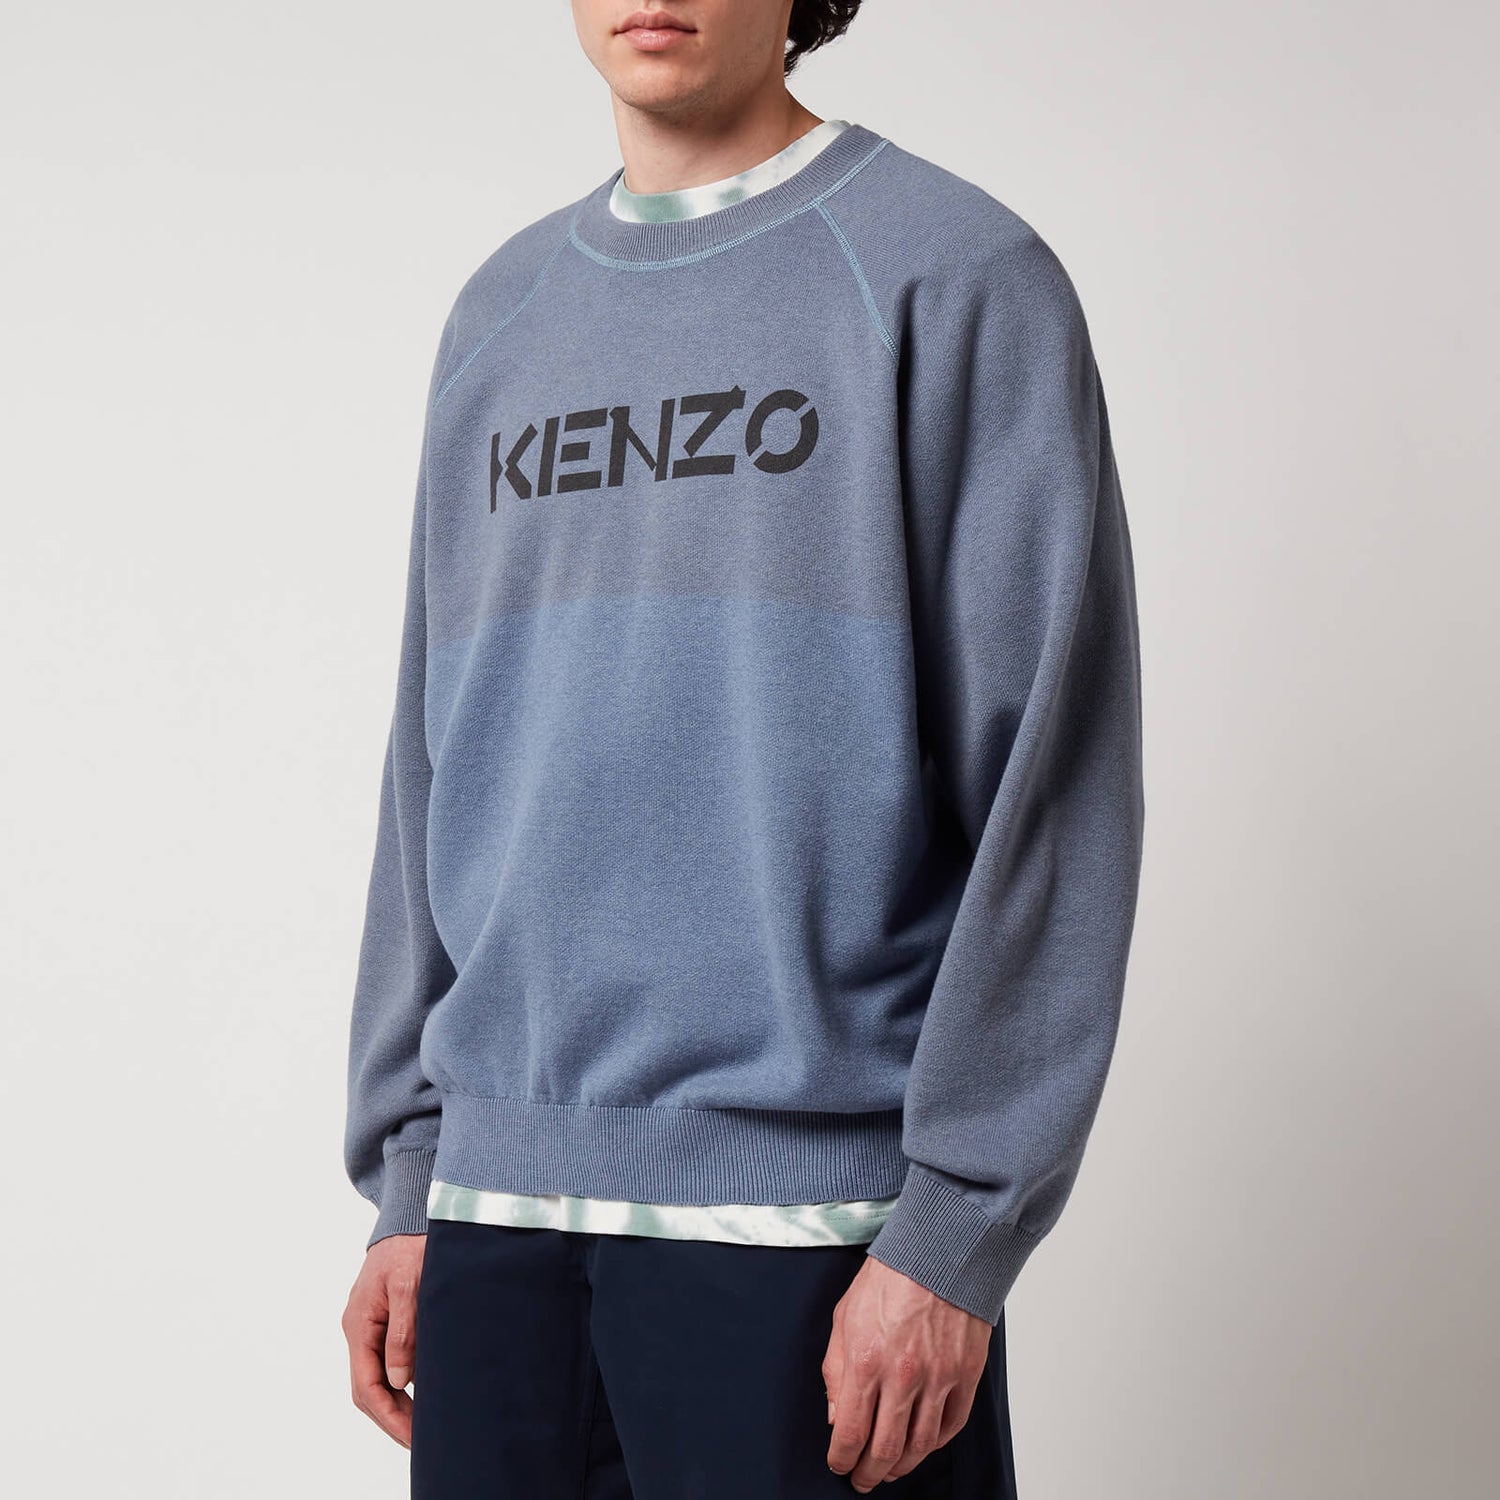 KENZO Men's Kenzo Logo Garment Dye Jumper - Glacier - M